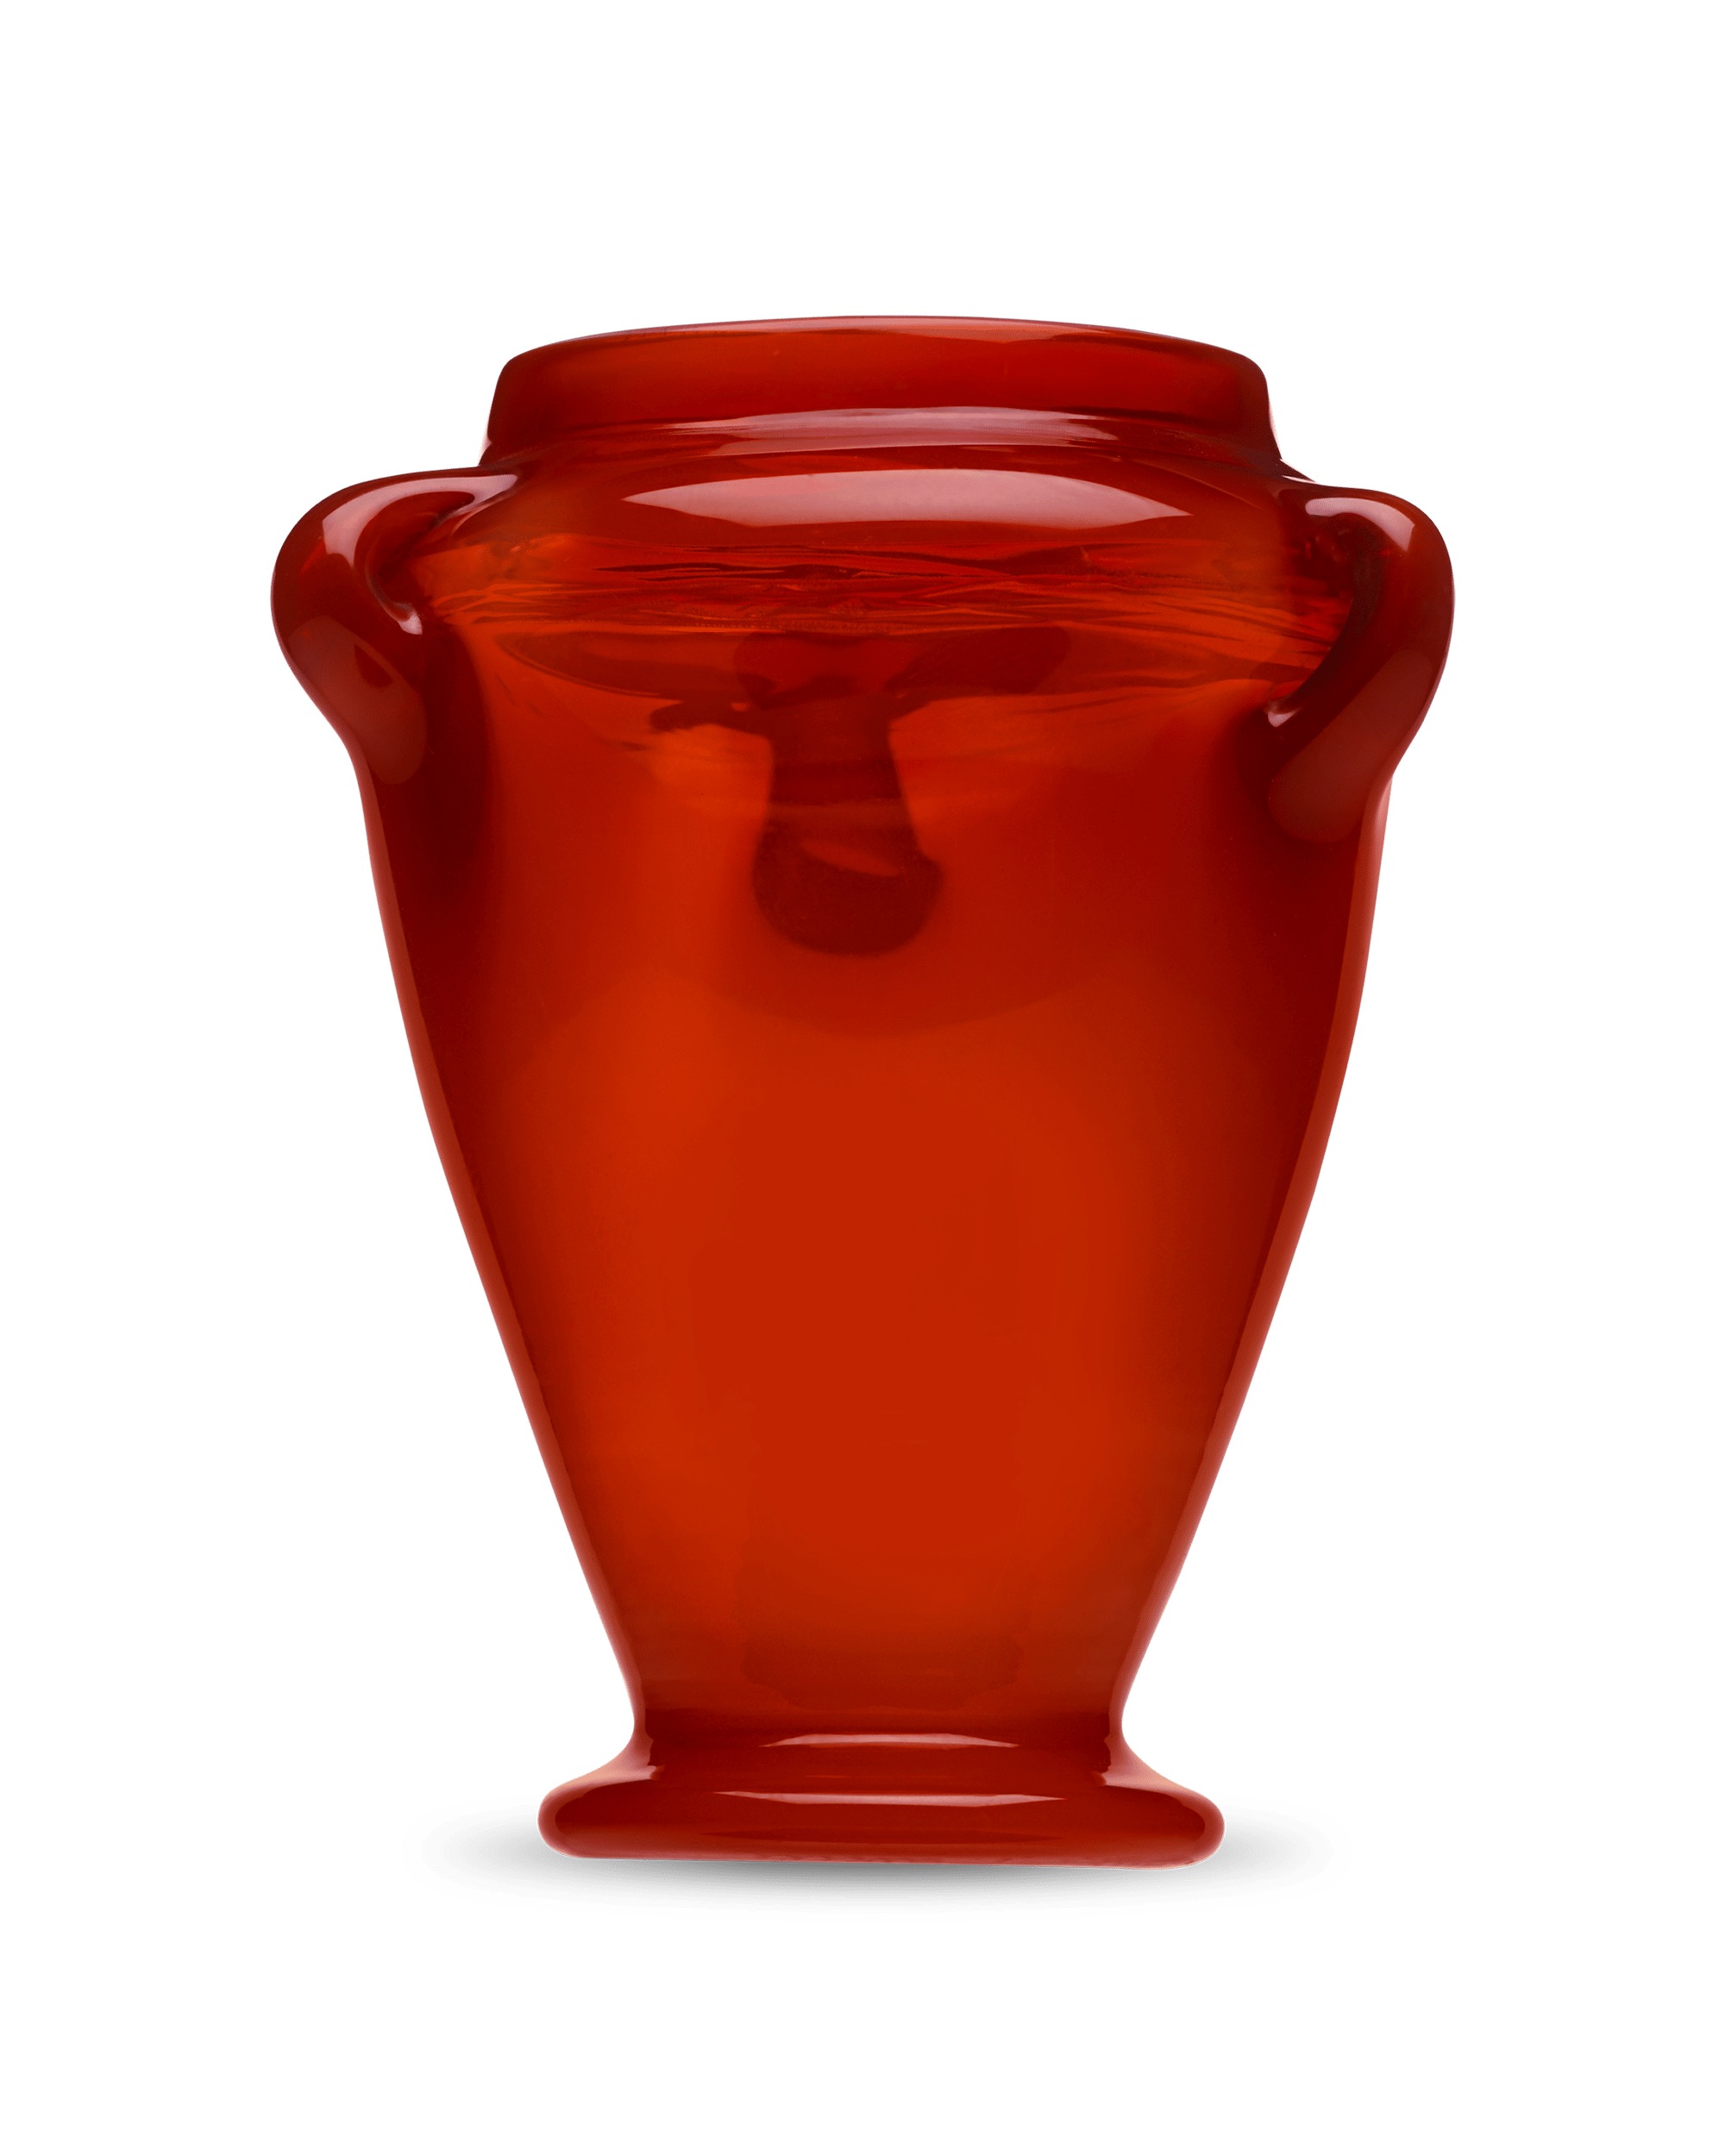 Tiffany Studios Red Favrile Vase